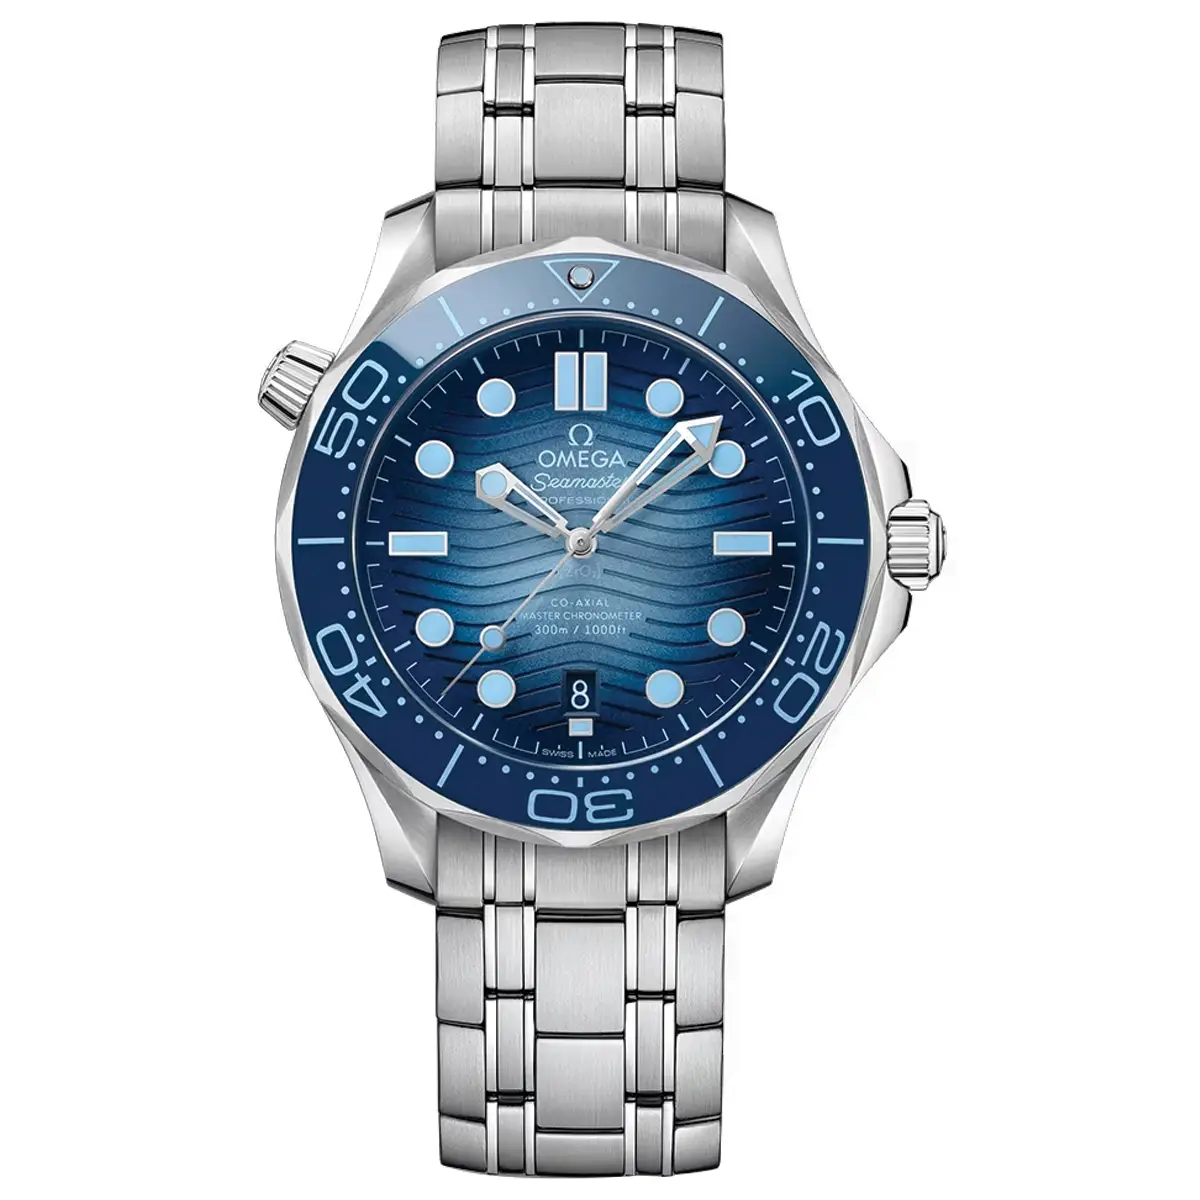 Đồng hồ Omega Seamaster Diver Master Chronometer 210.30.42.20.03.003 mặt số màu xanh. Dây đeo bằng thép. Thân vỏ bằng thép.